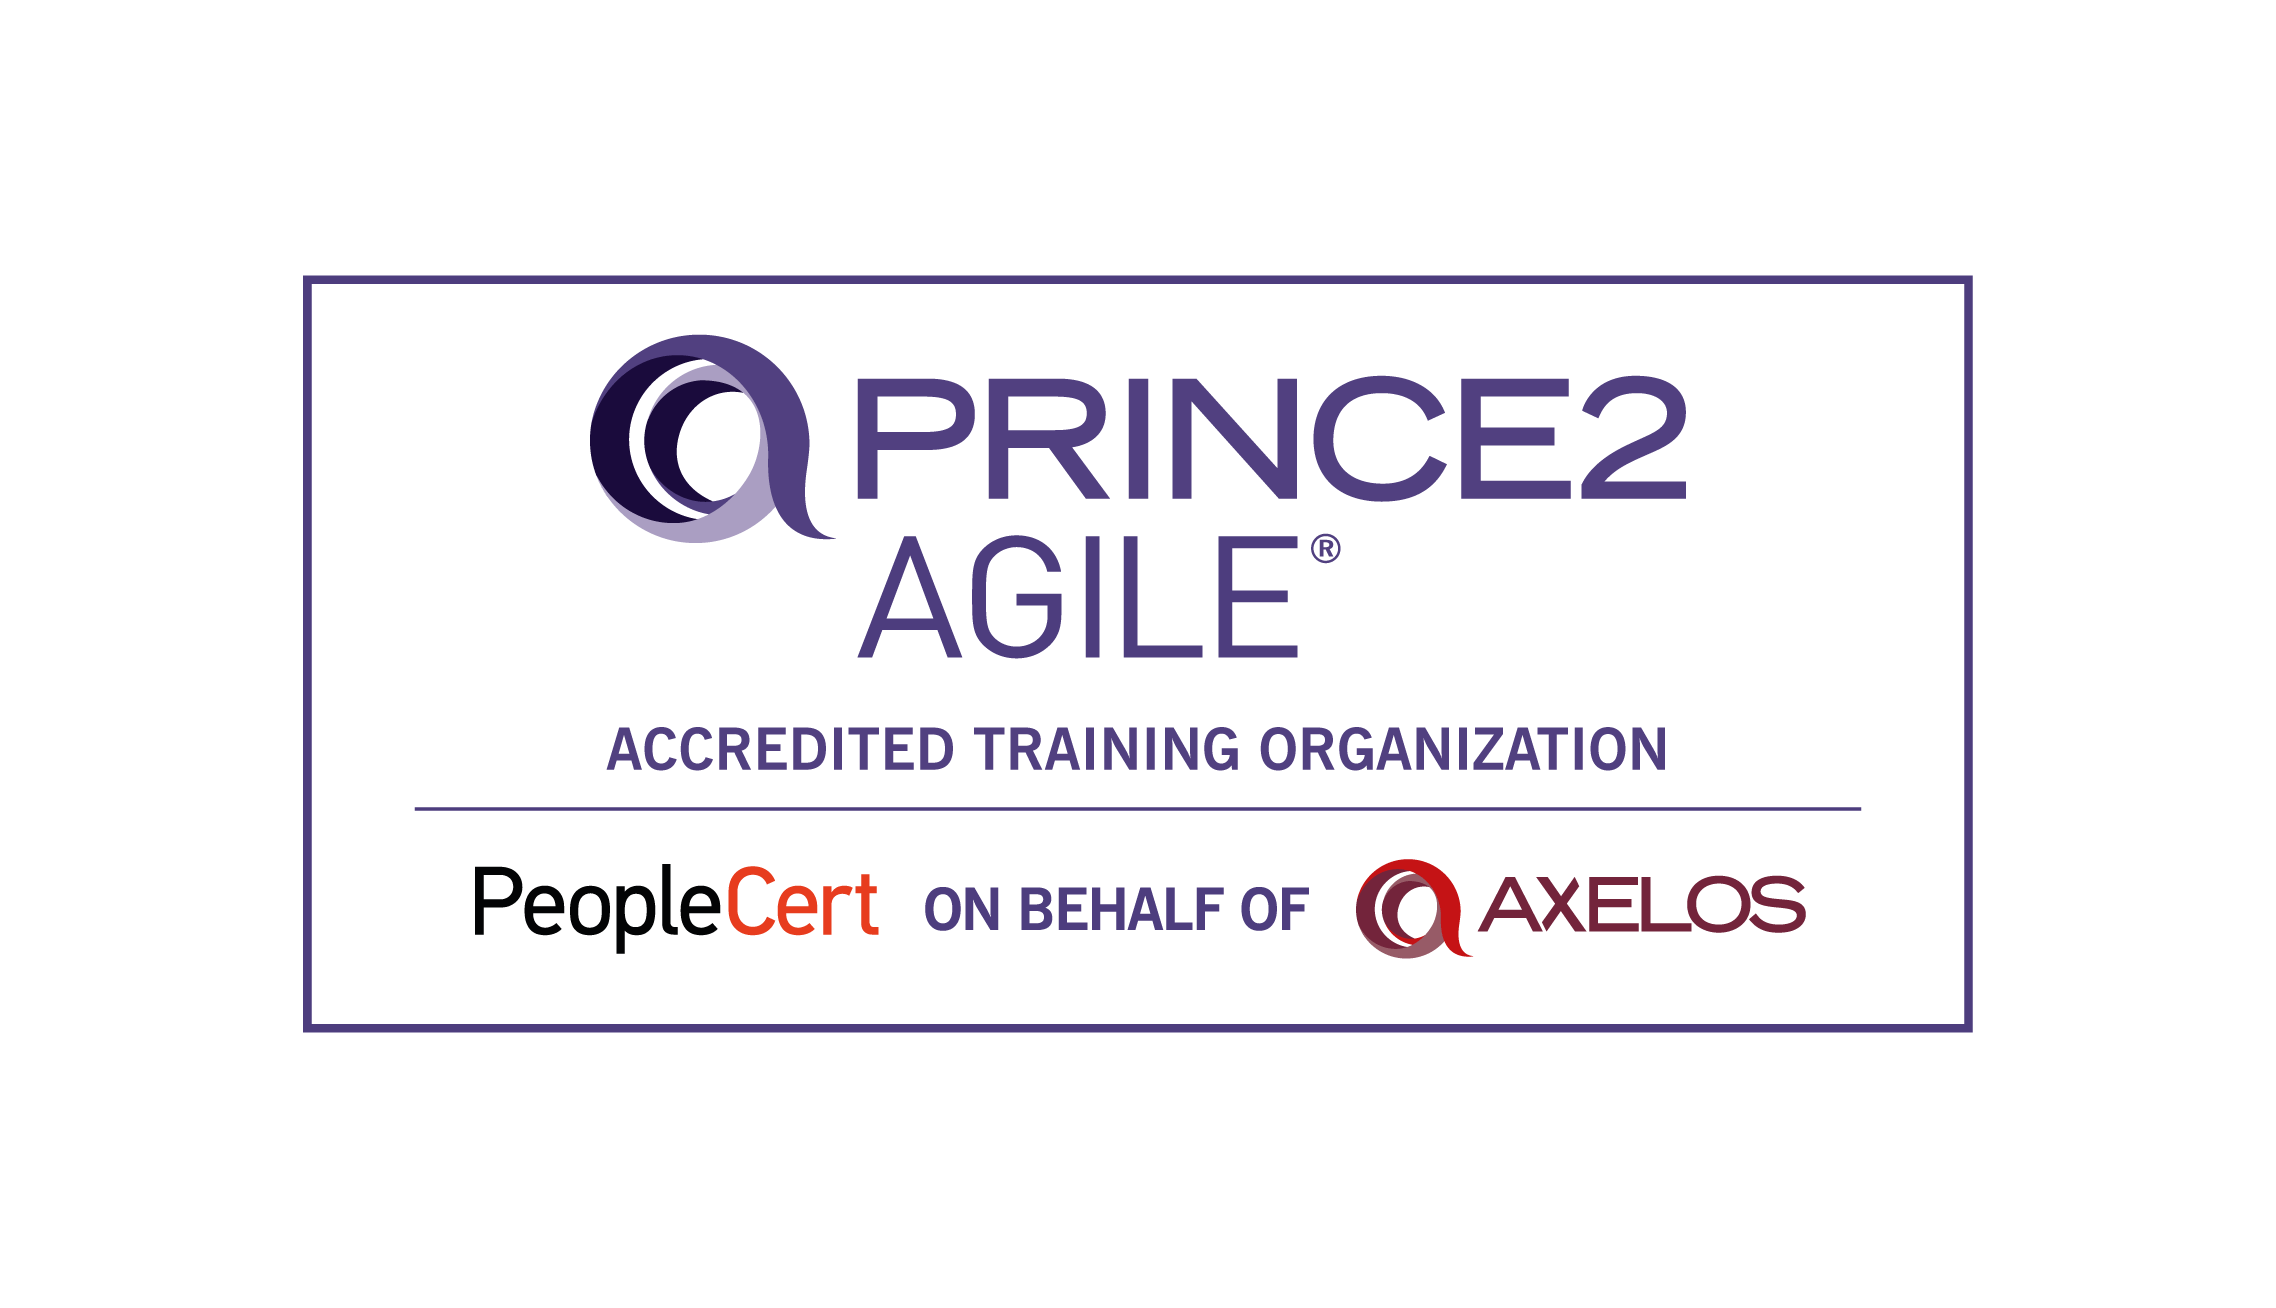 PRINCE2 Agile Foundation Certification